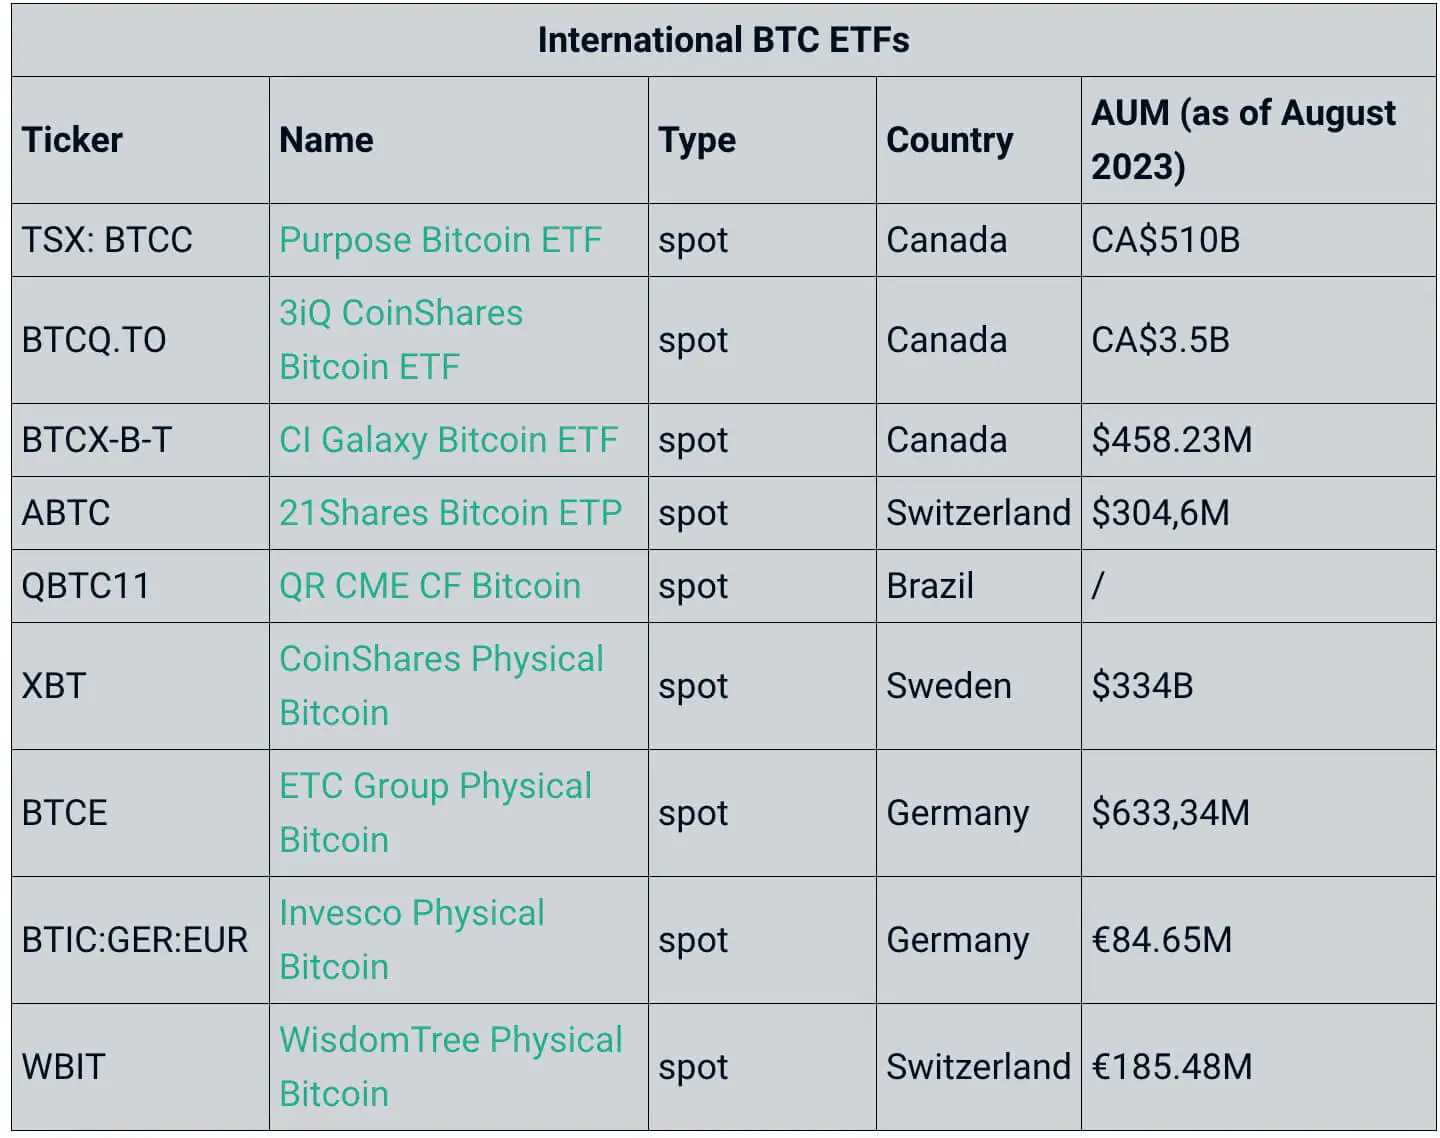 International BTC ETF